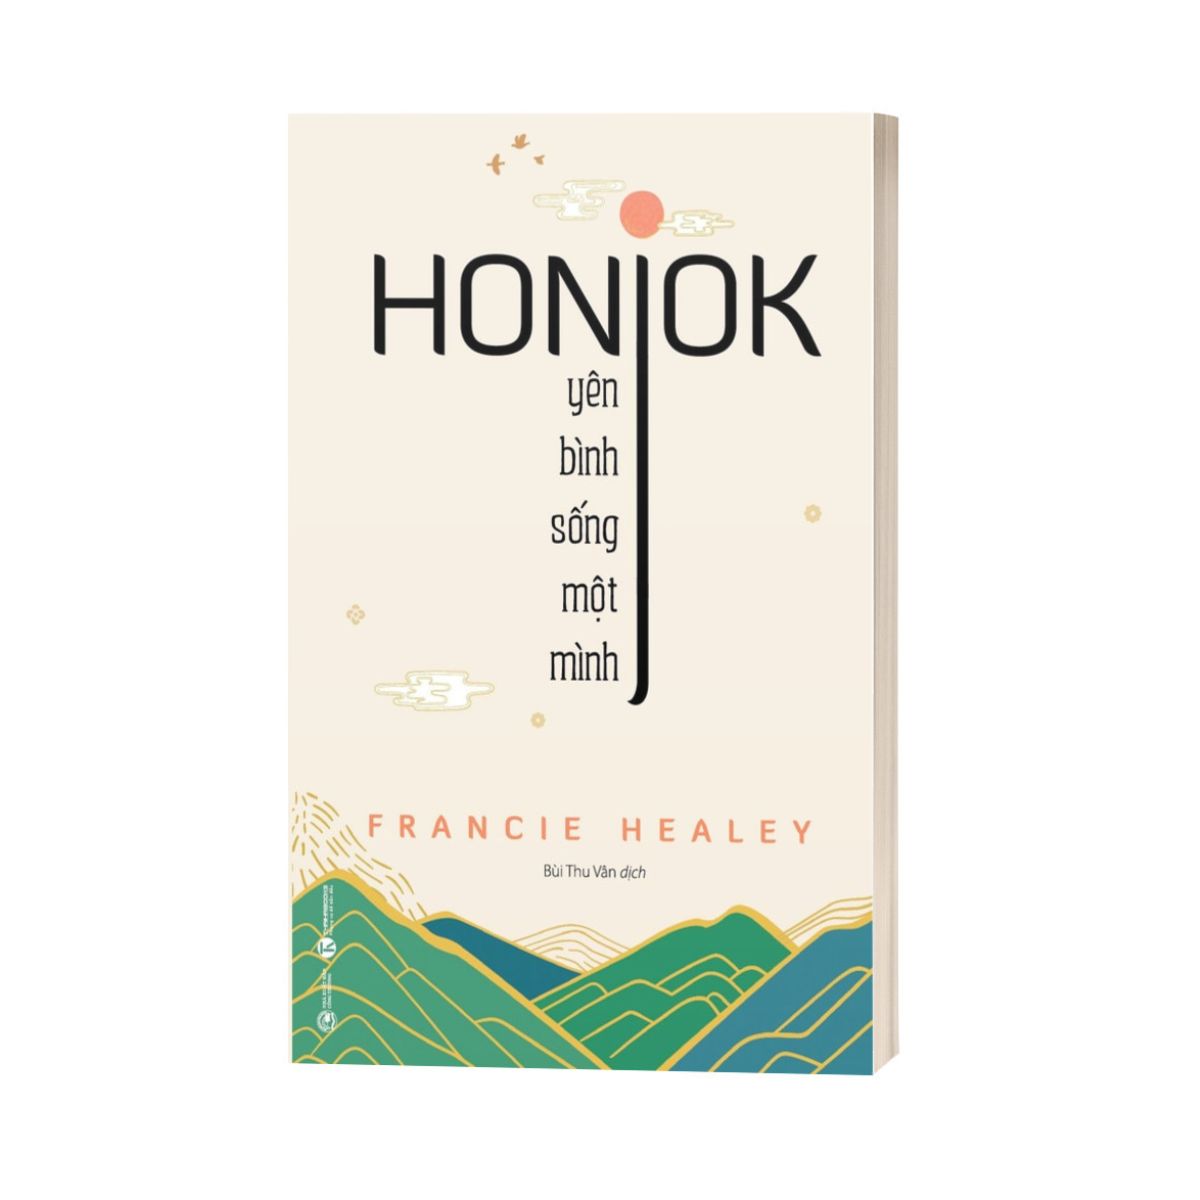 Hình ảnh Honjok: Yên Bình Sống Một Mình